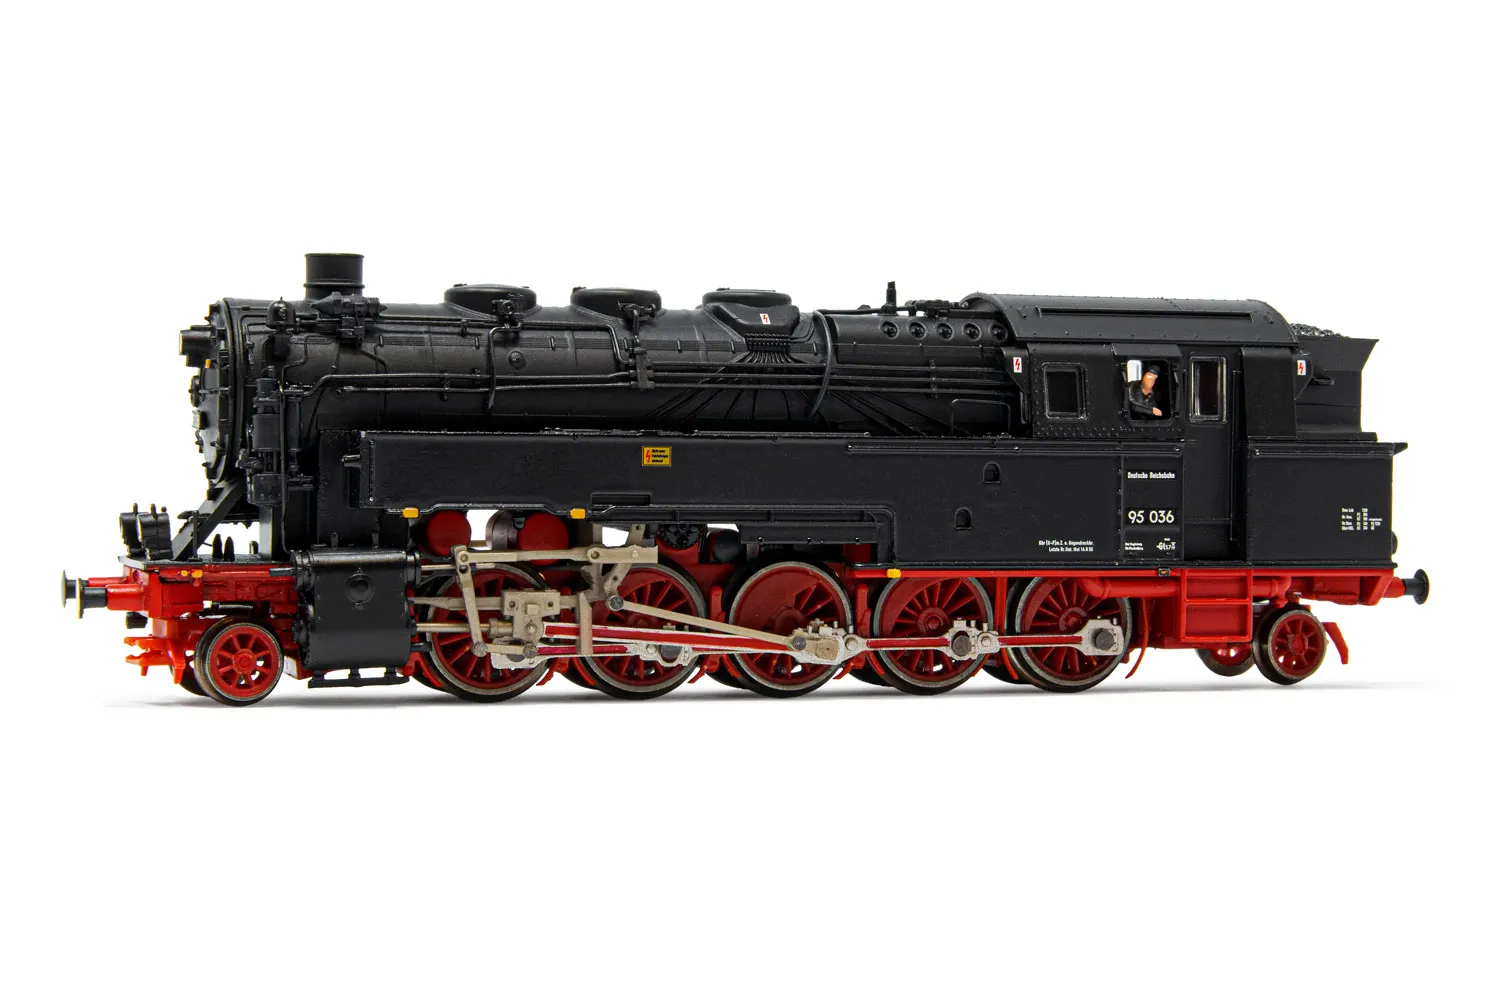 DR, Dampflokomotive BR 95 036, mit Kohlefeuerung, in rot/schwarzer Lackierung, Ep. III